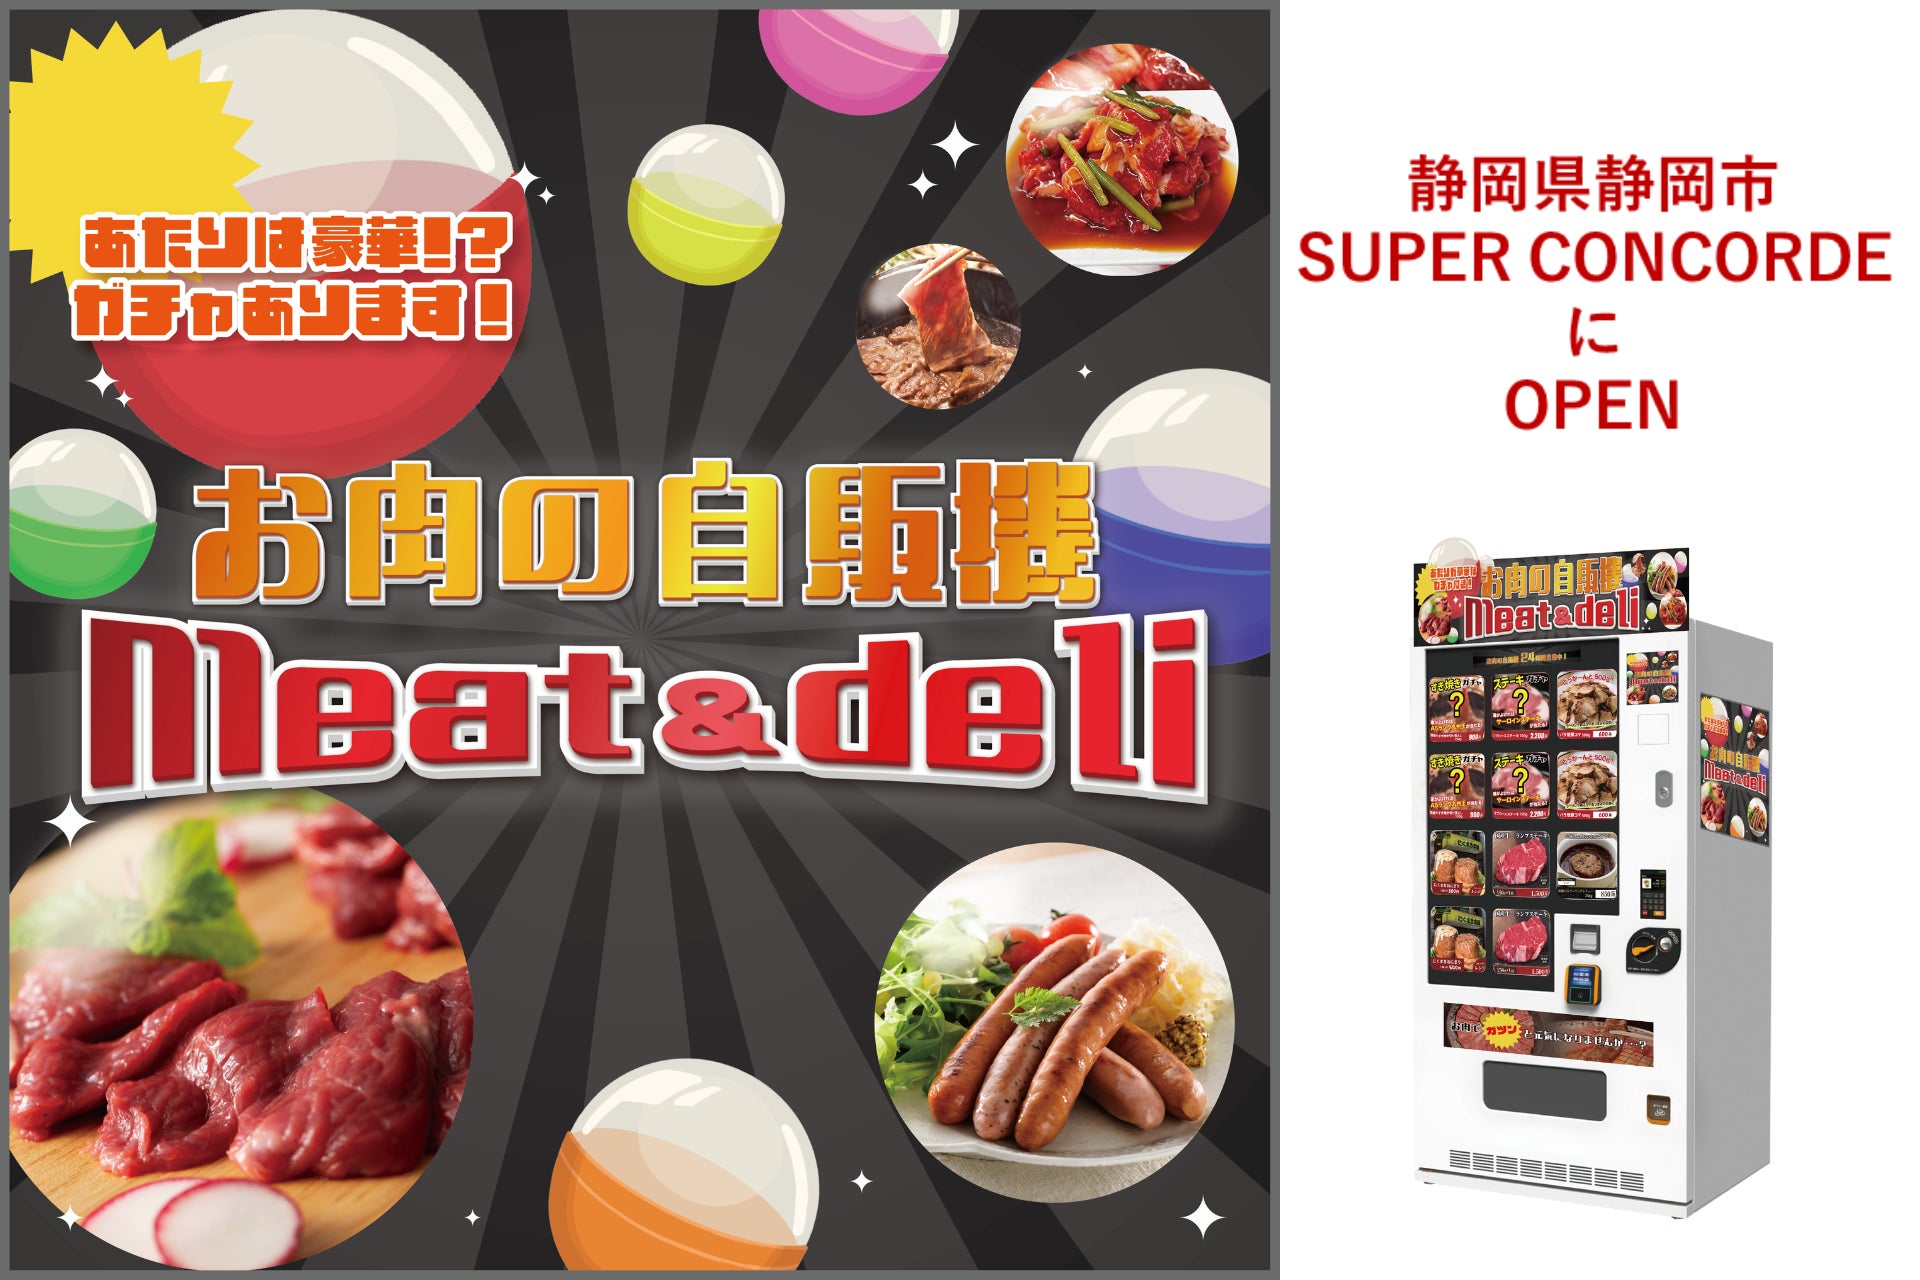 冷凍自販機ブランドシリーズ『お肉の自販機meat＆deli』が静岡県静岡市にオープン！